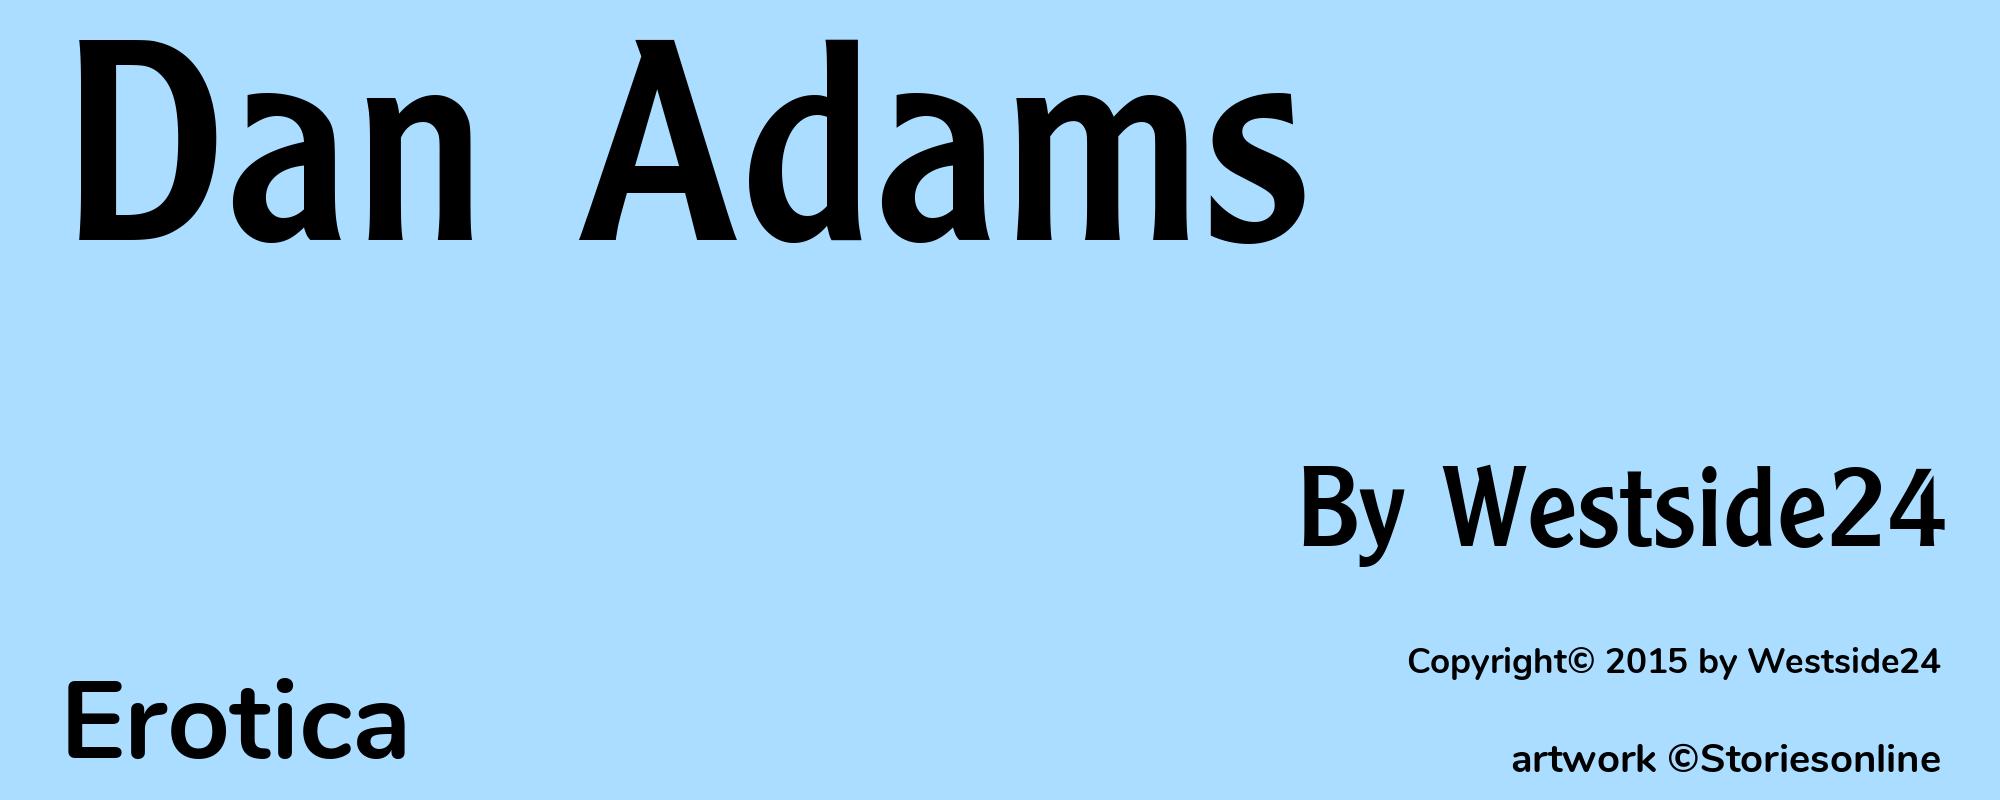 Dan Adams - Cover